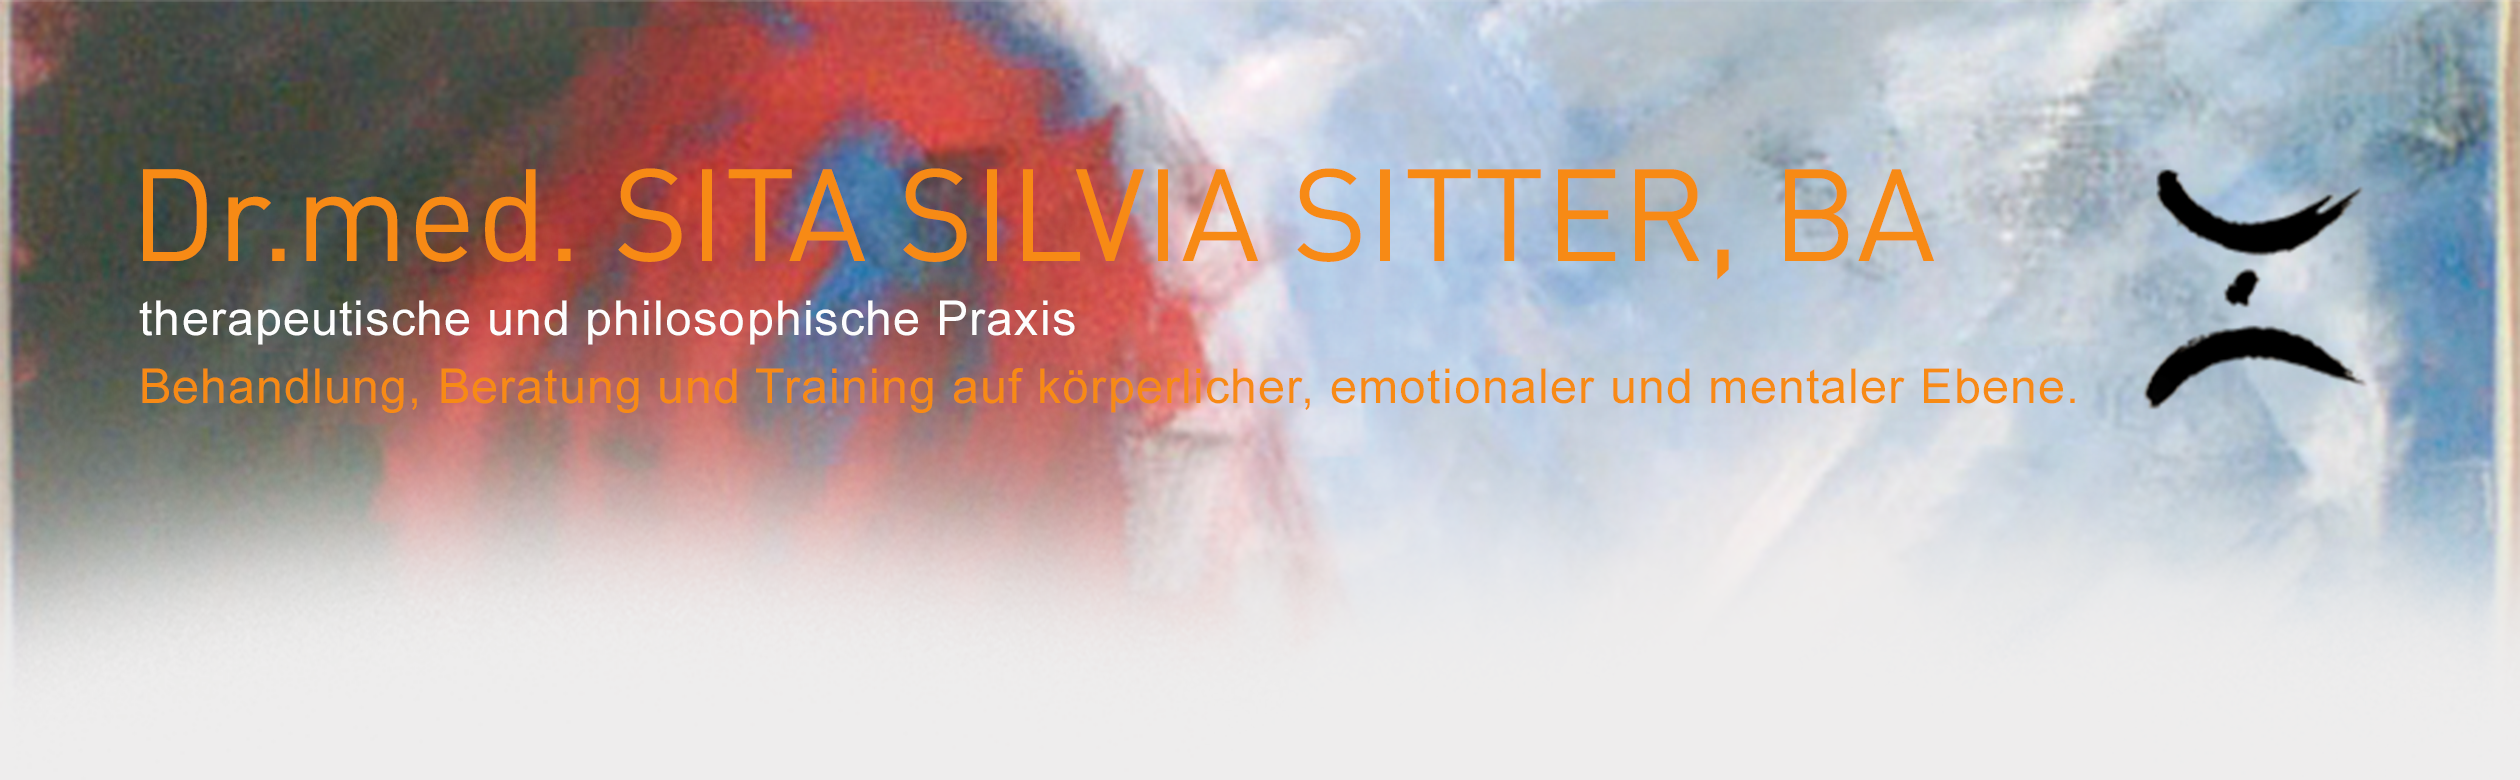 Dr. med. Sita Silvia Sitter. Behandlung, Beratung und Training auf körperlicher, emotionaler und mentaler Ebene